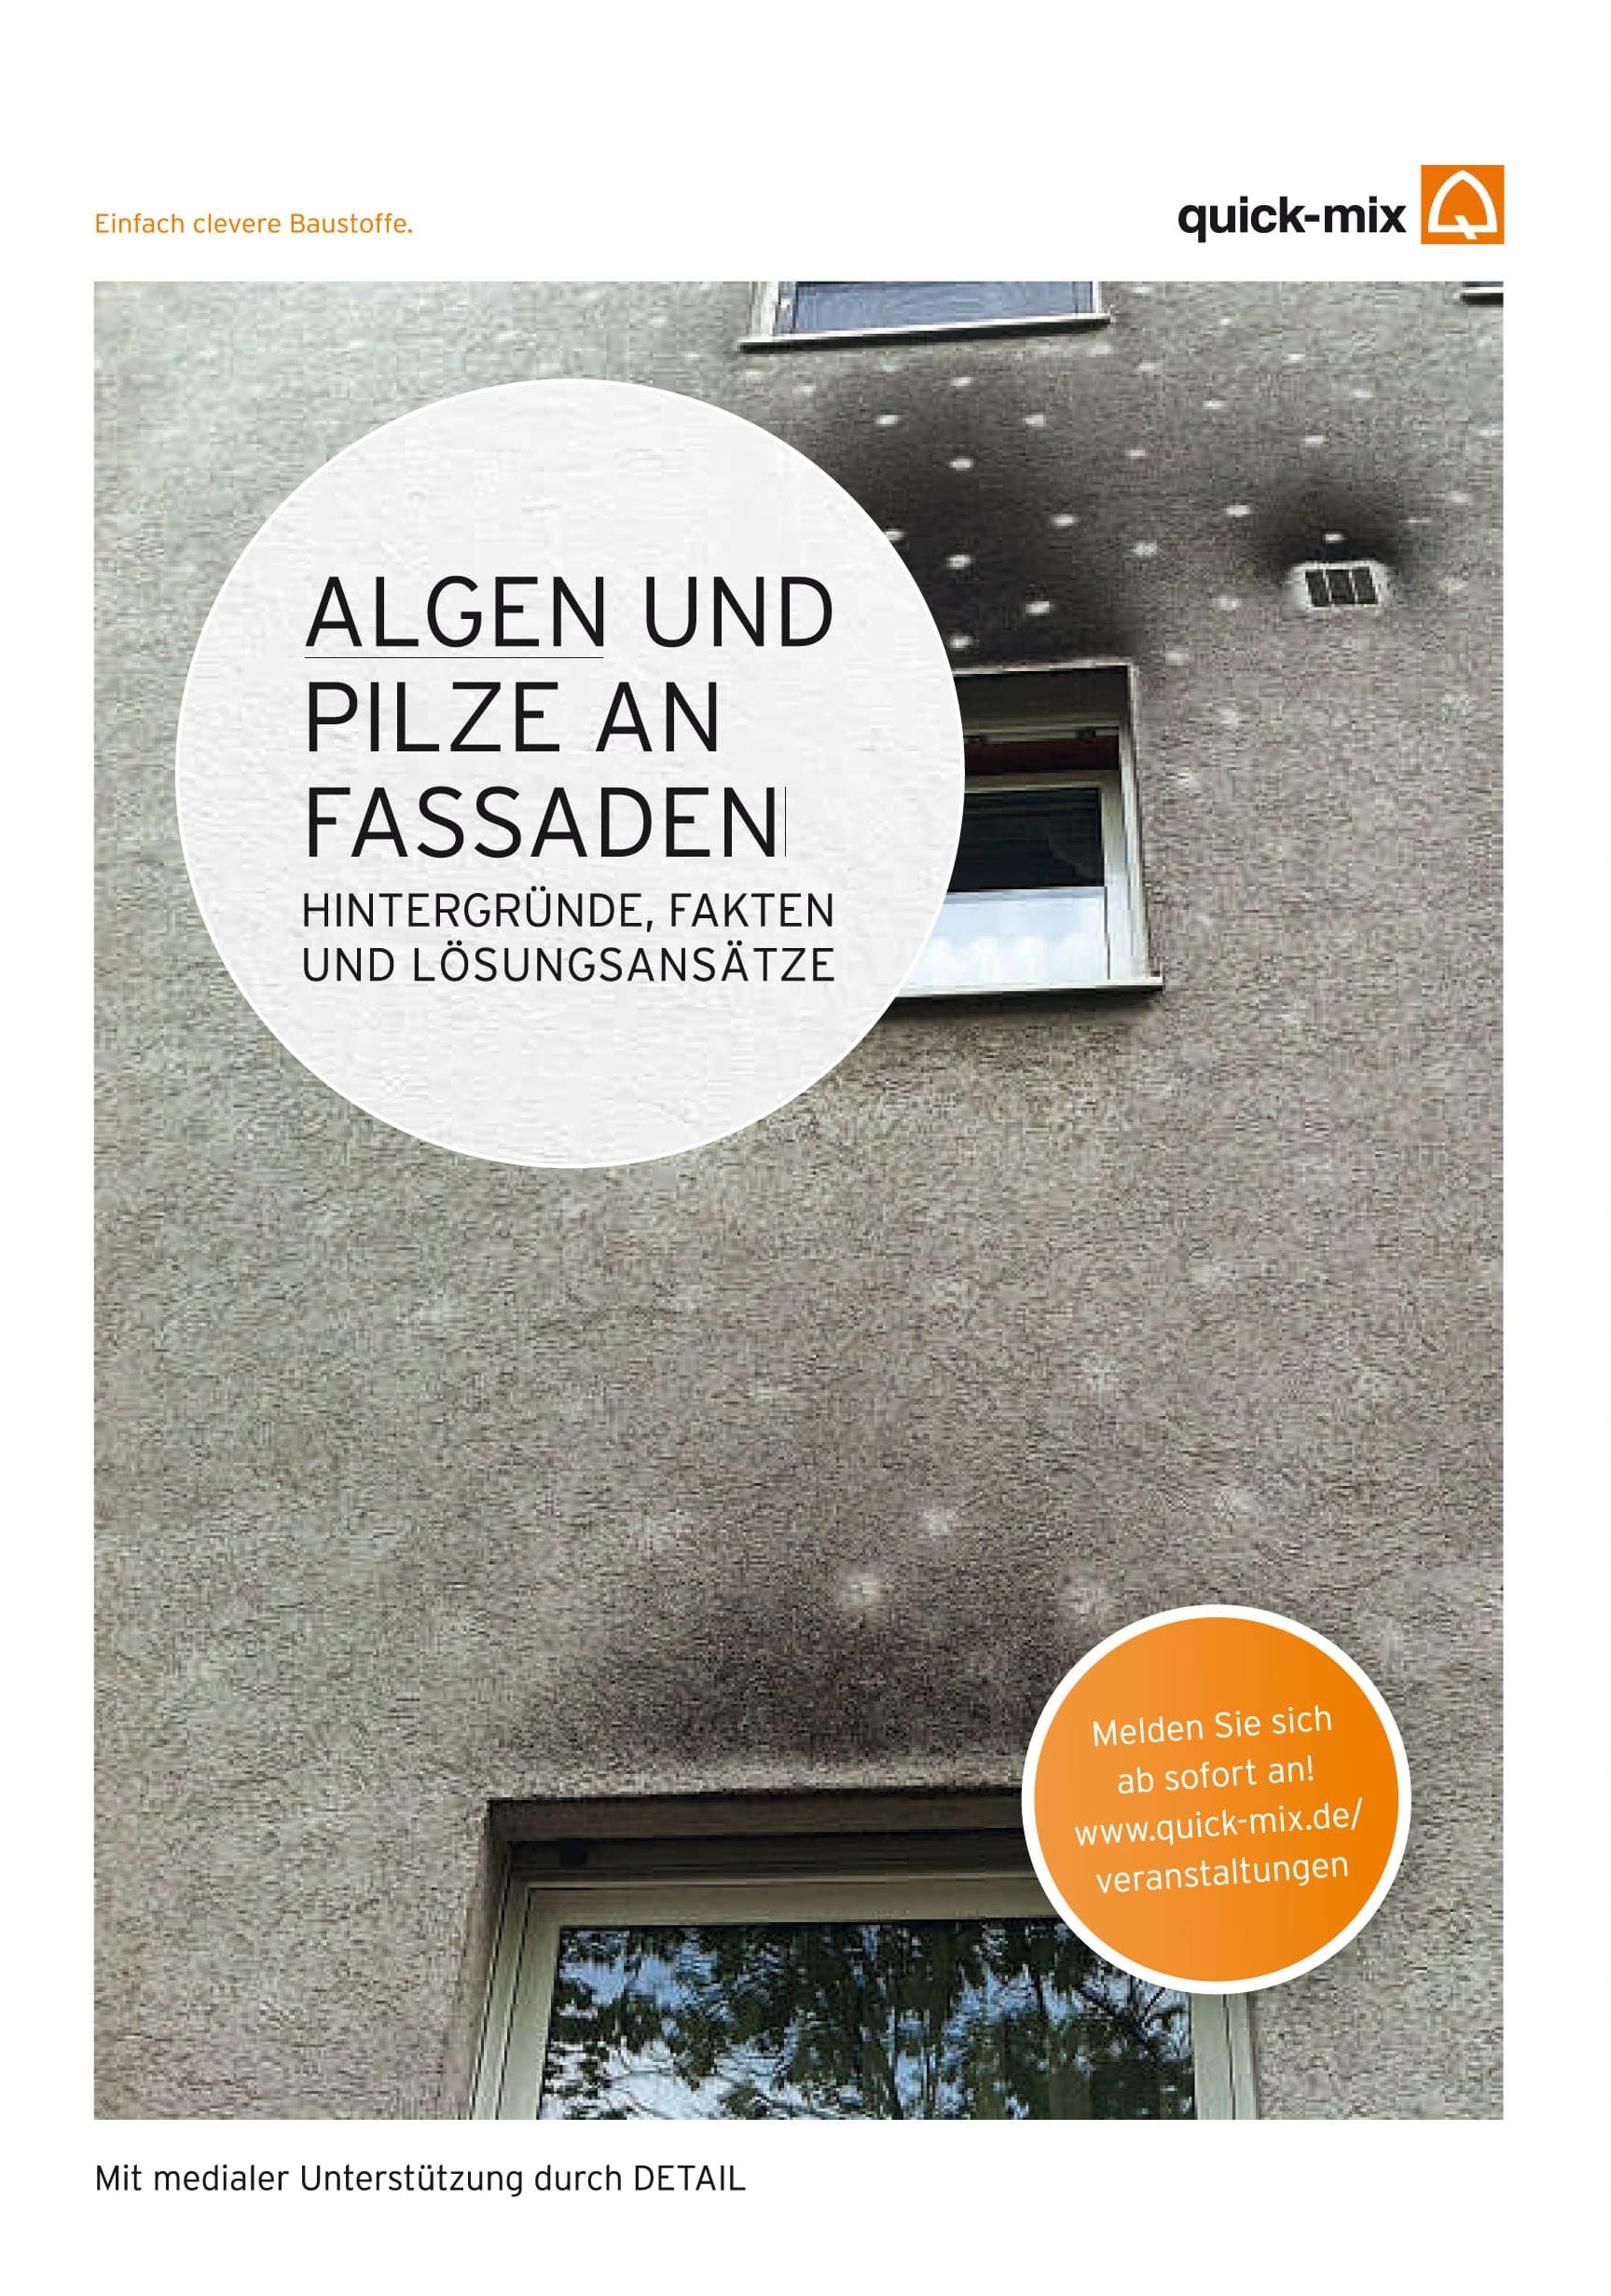 Seminarreihe "Algen und Pilze an der Fassade" der quick-mix Gruppe